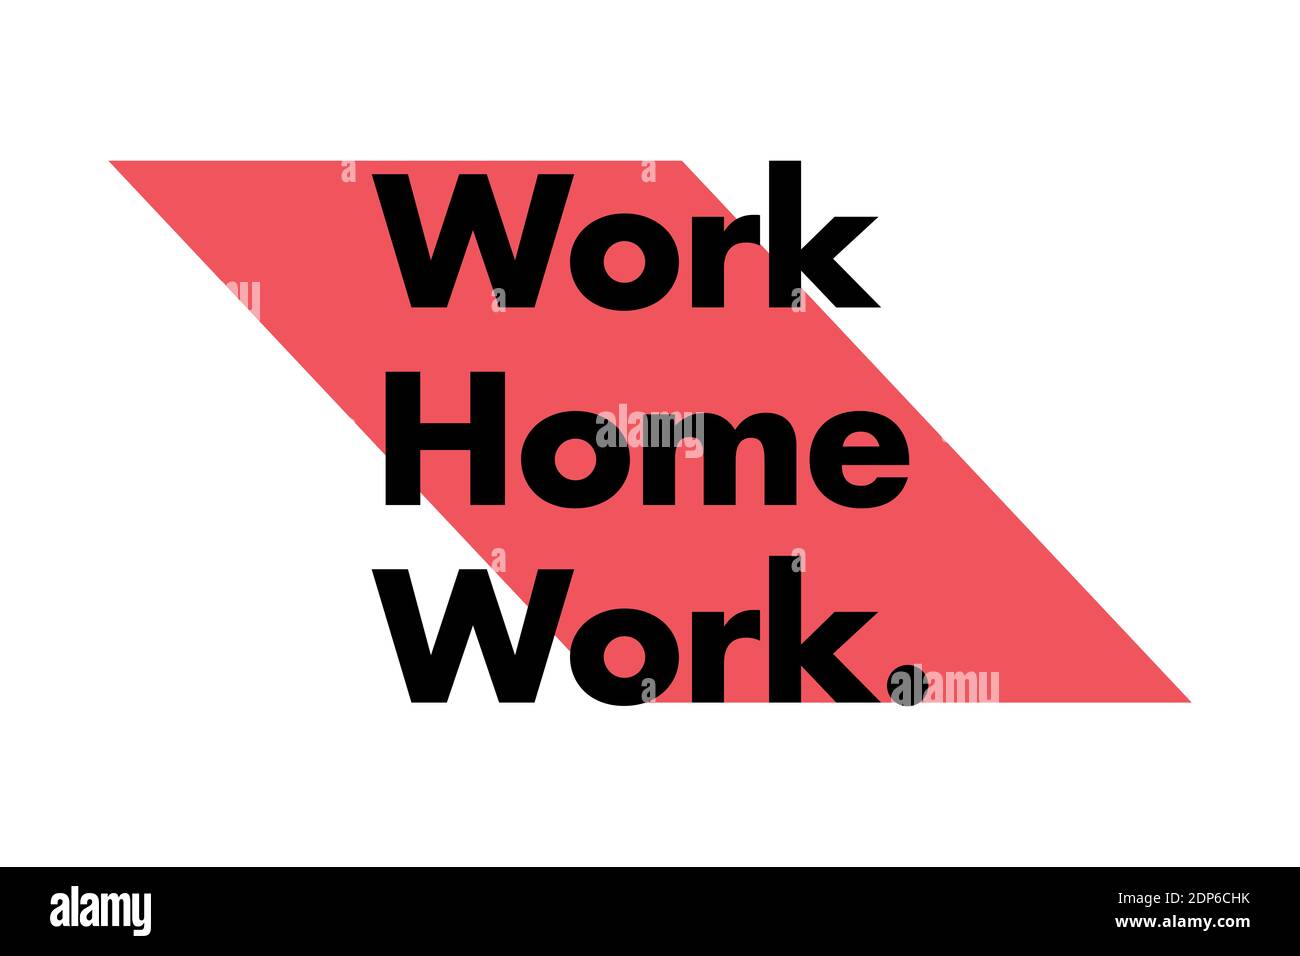 Design grafico semplice, moderno e vivace di un "lavoro a casa" con una forma geometrica audace nei colori rosso e nero. Tipografia urbana. Foto Stock